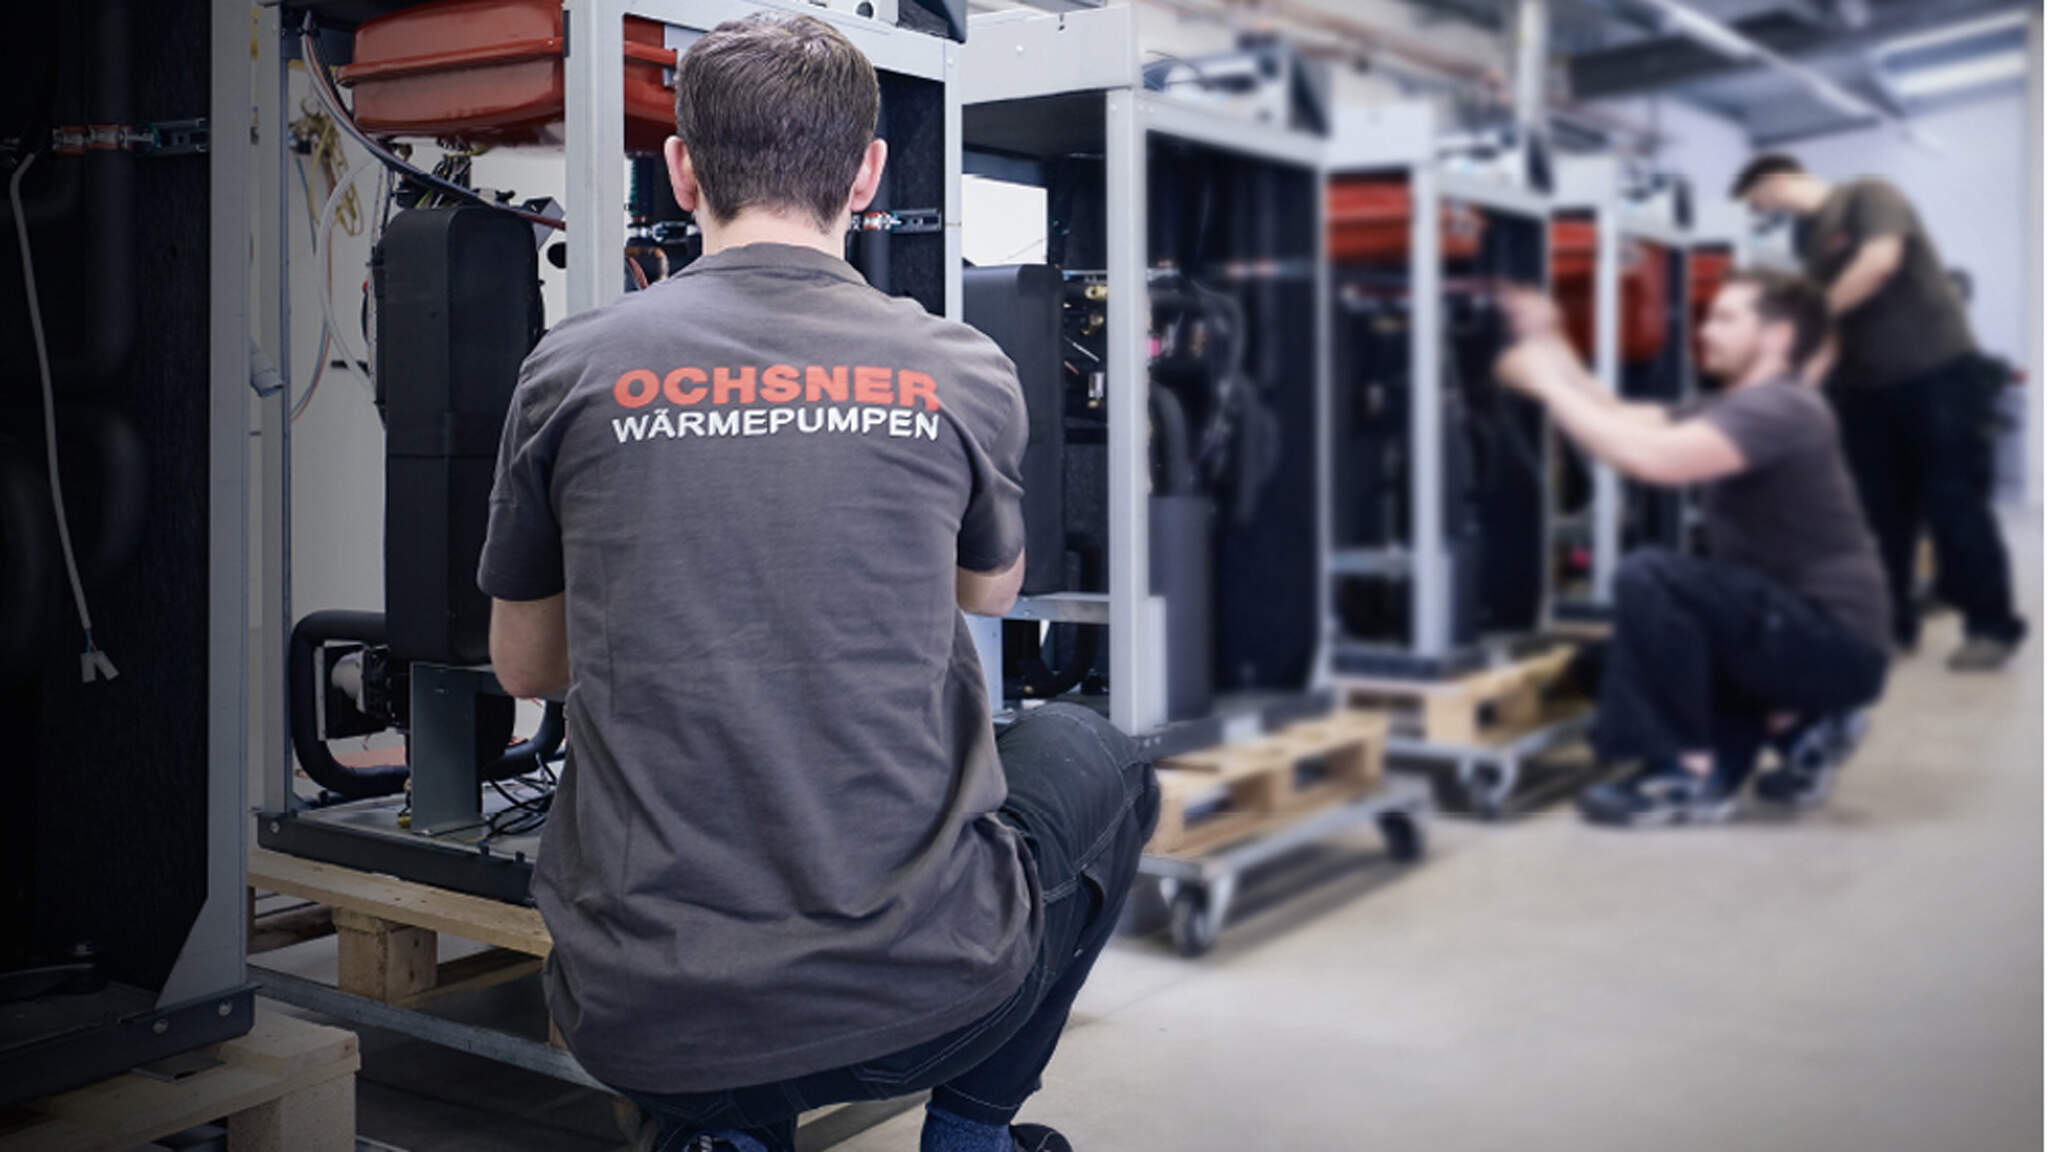 Ochsner Wärmepumpen GmbH mit Sitz im österreichischen Linz gilt als einer der internationalen Technologieführer der Branche